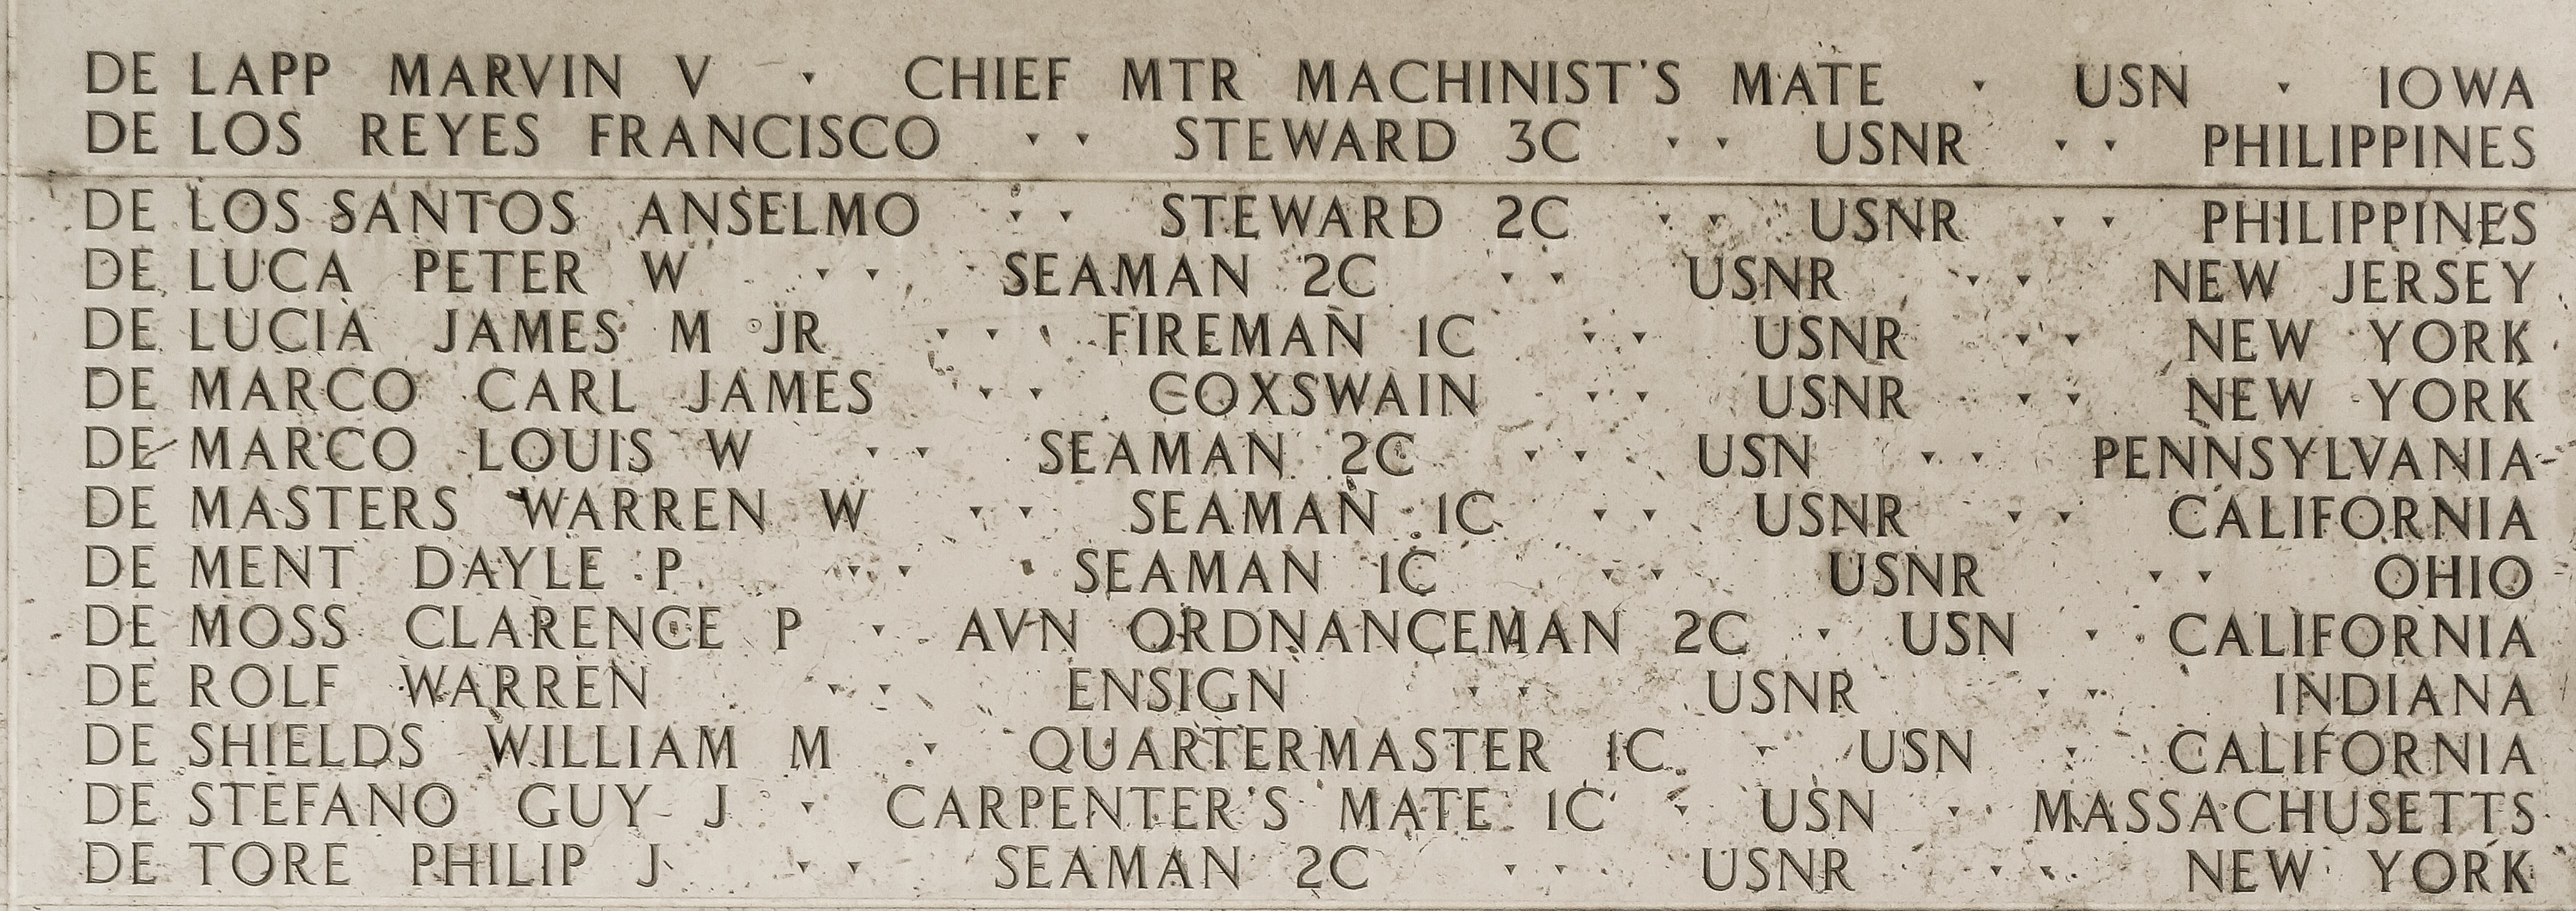 Dayle P. De Ment, Seaman First Class